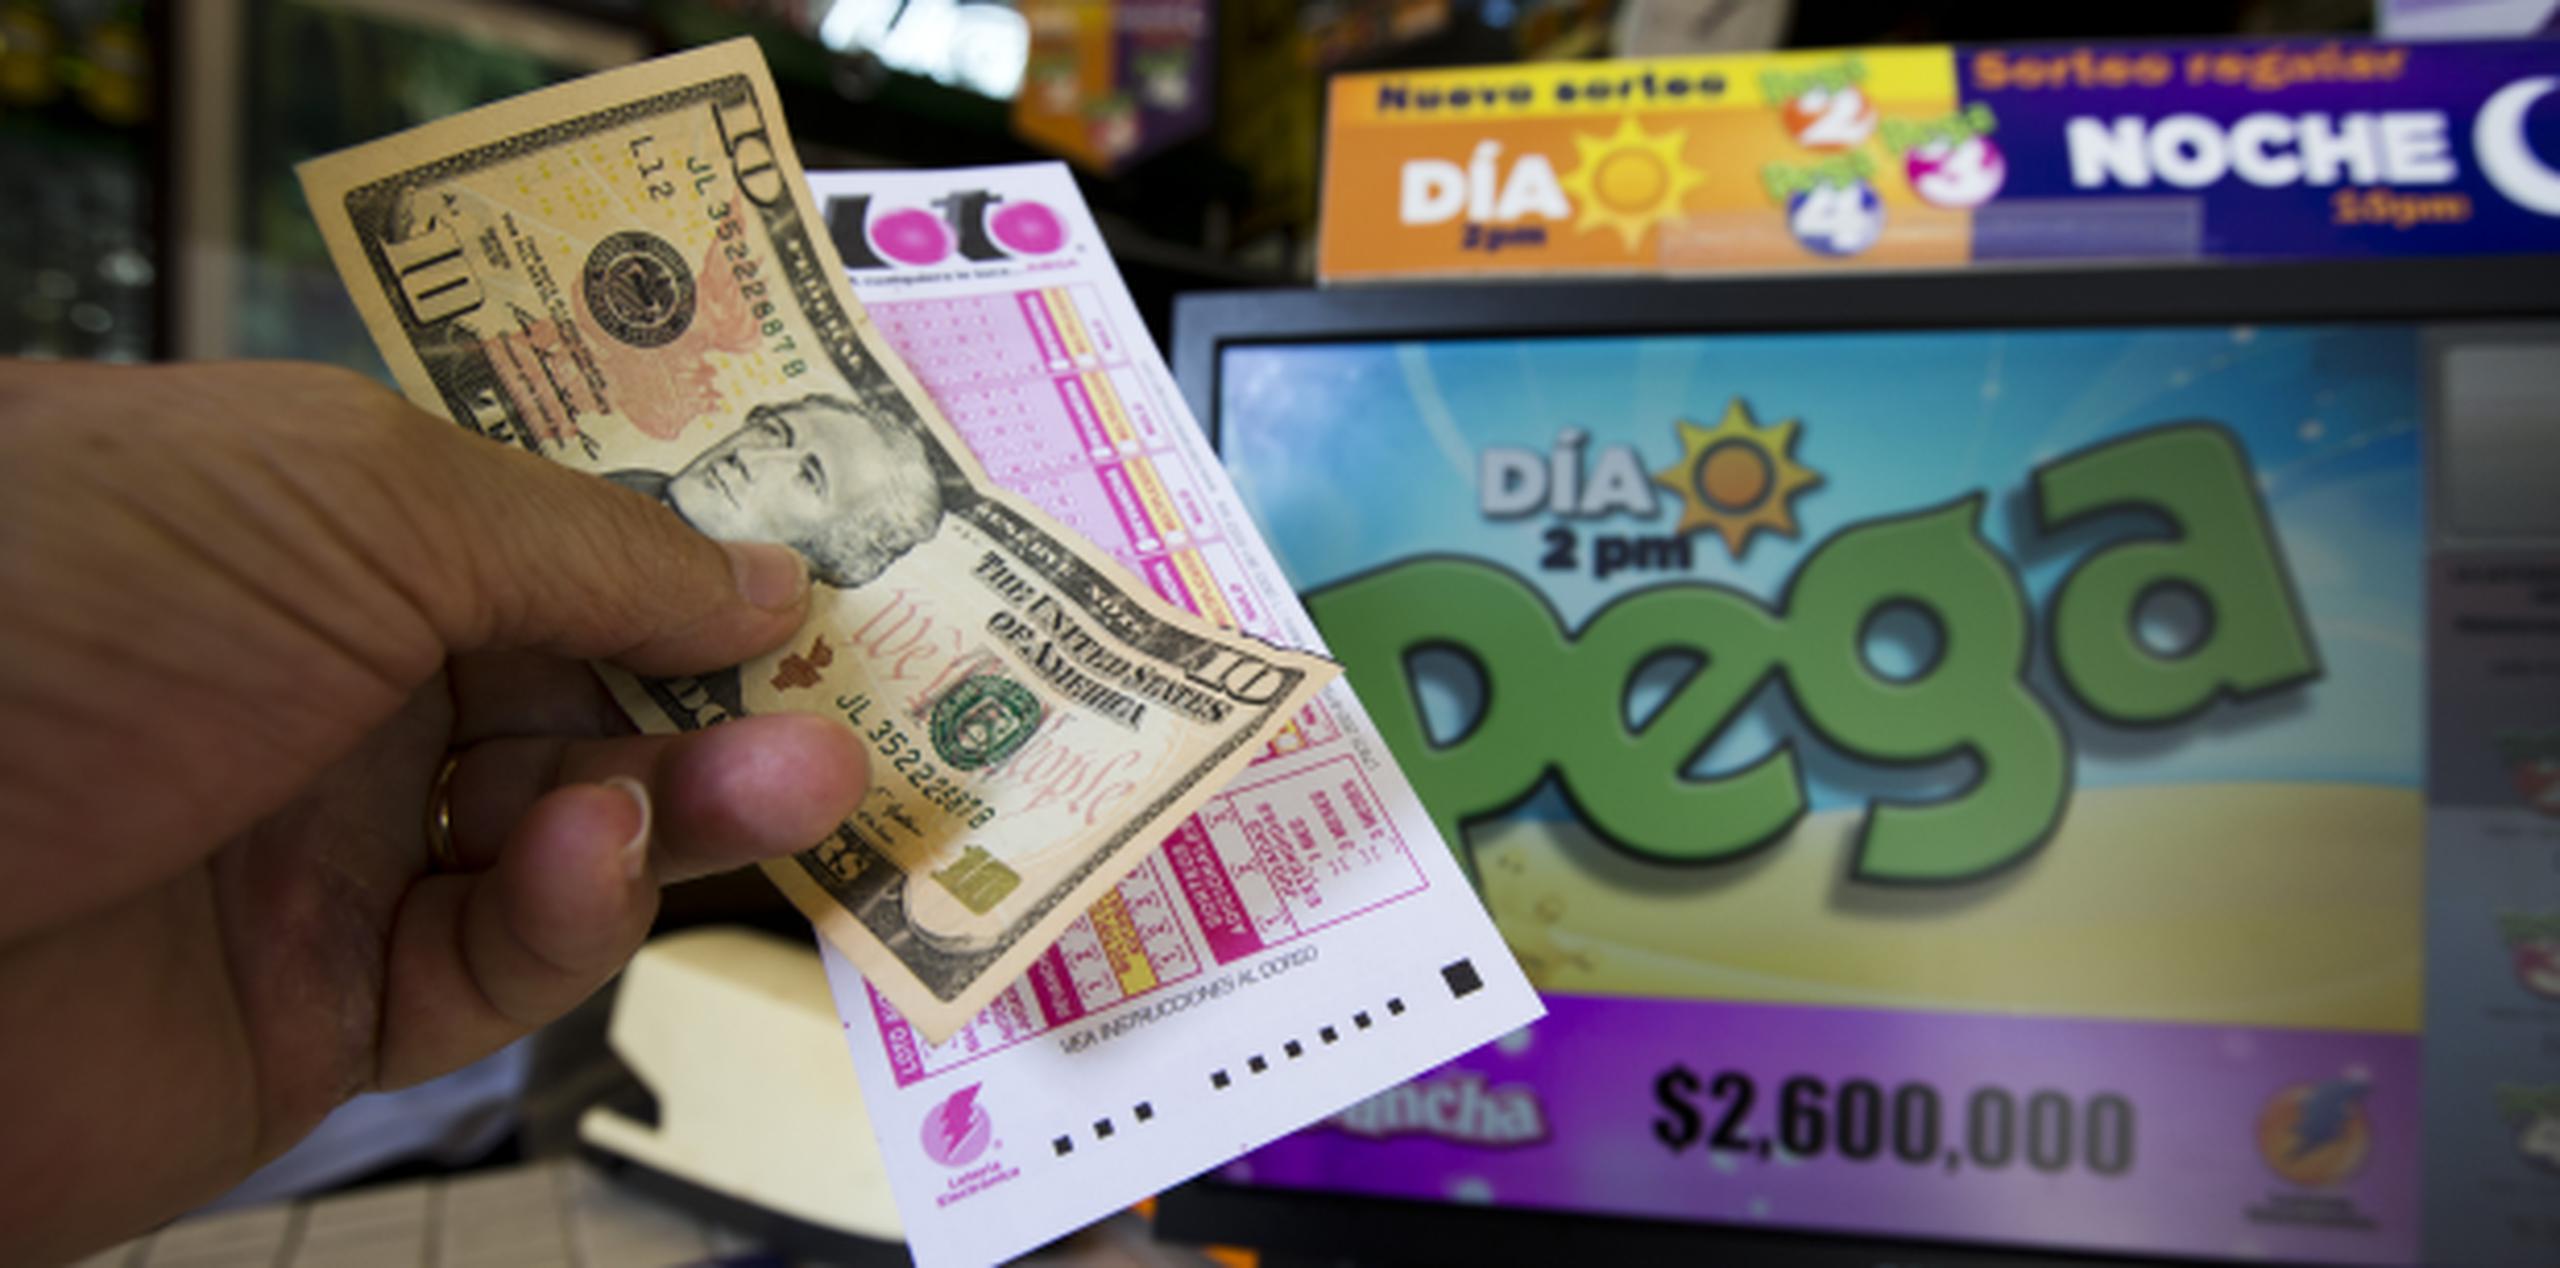 El premio de la Revancha asciende ahora a $250,000, indicó la Lotería Electrónica en su página en línea. (Archivo)